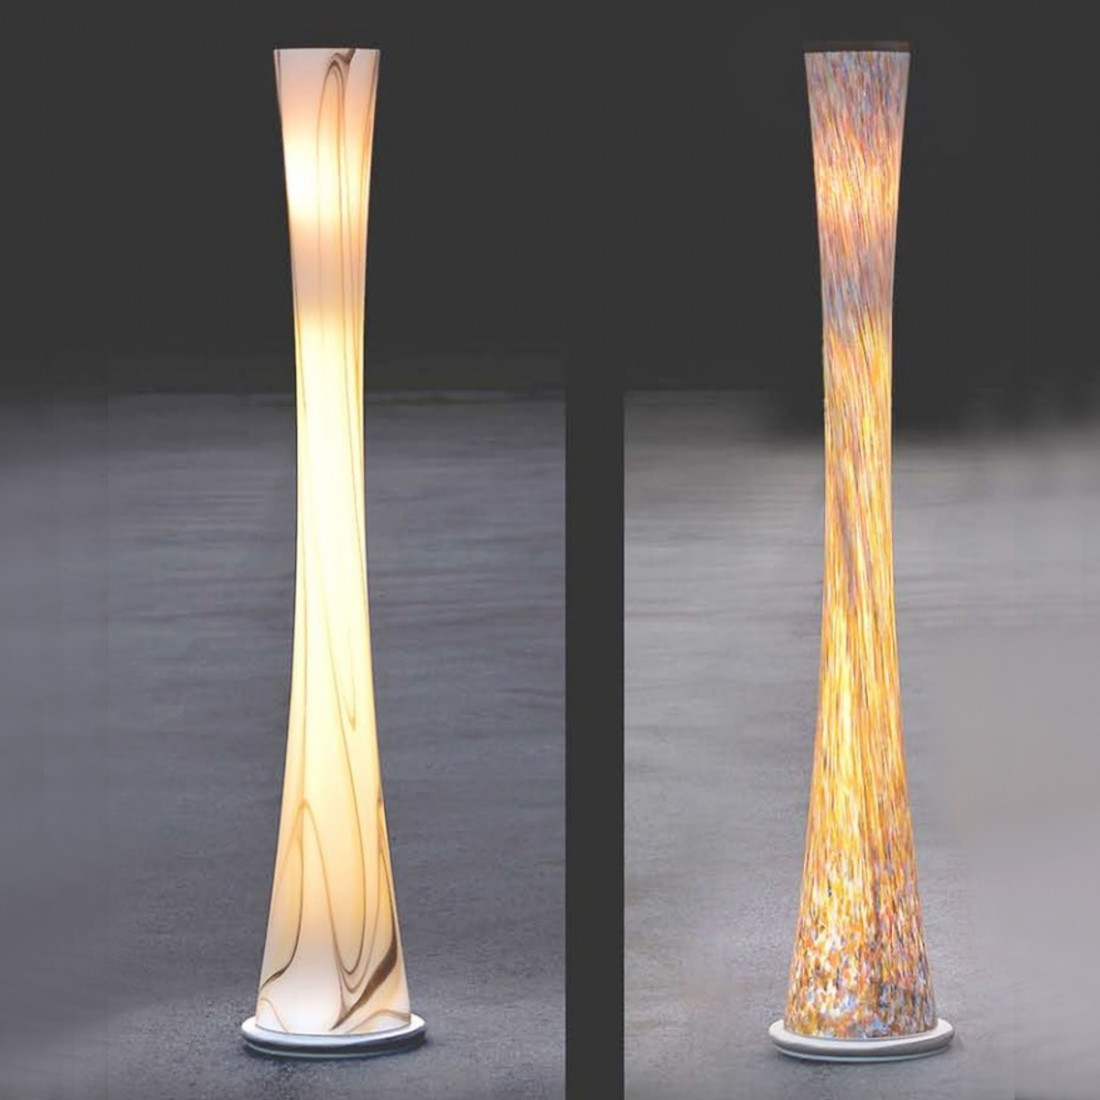 Piantana SN-CLESSIDRA T5 neon vetro soffiato multicolor dimmerabile moderna lampada terra interno IP20